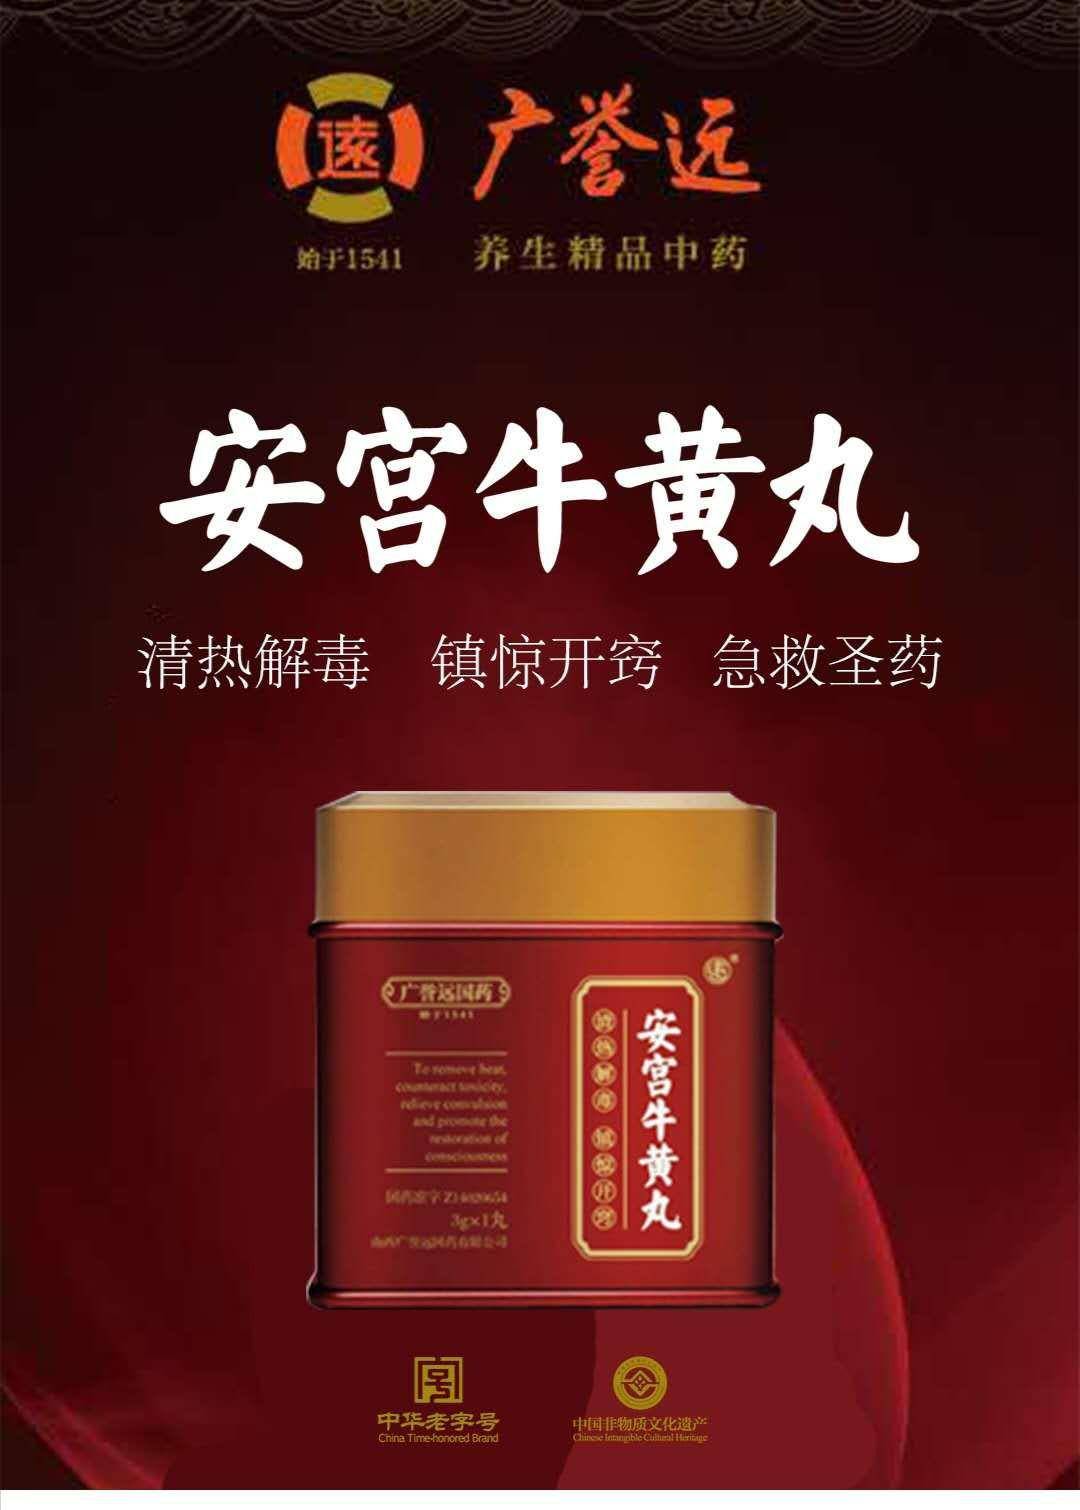 广誉远安宫牛黄丸始于光绪11年,选用高品质牛黄入药,胆红素含量30%